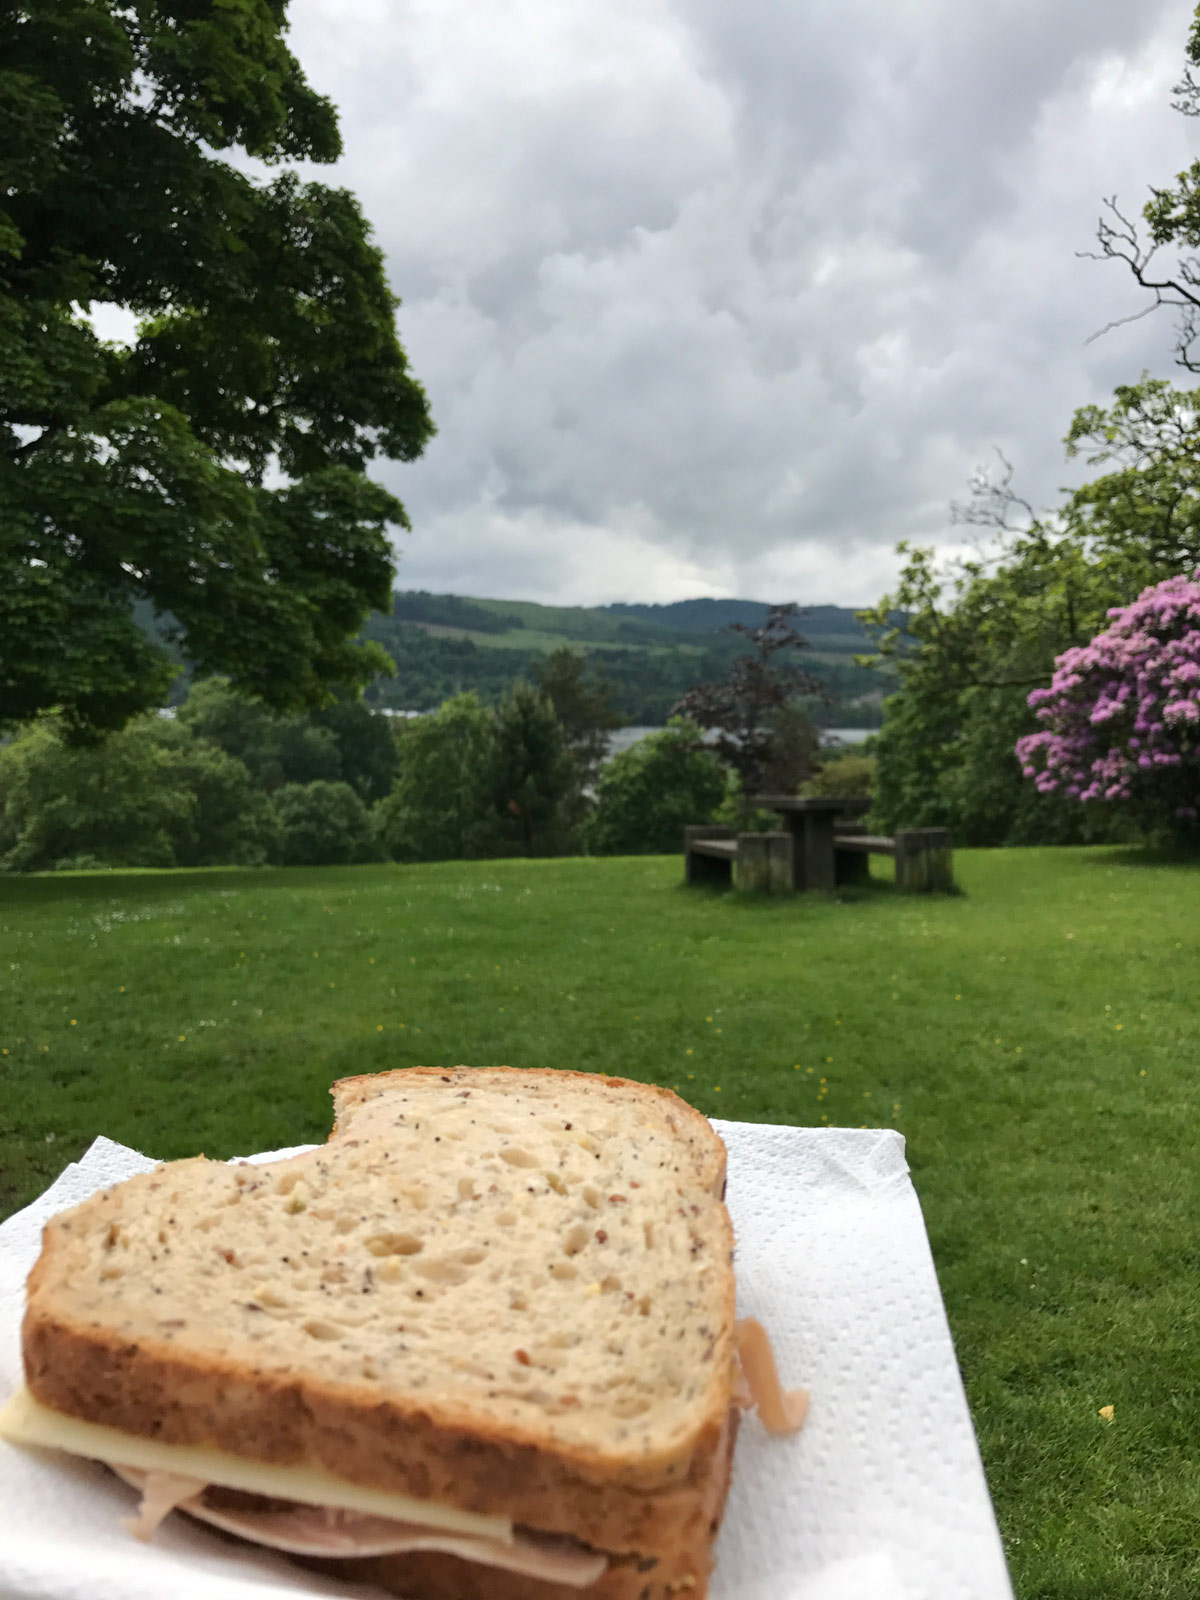 sandwich on napkin in foreground, Loch Lomond in background.